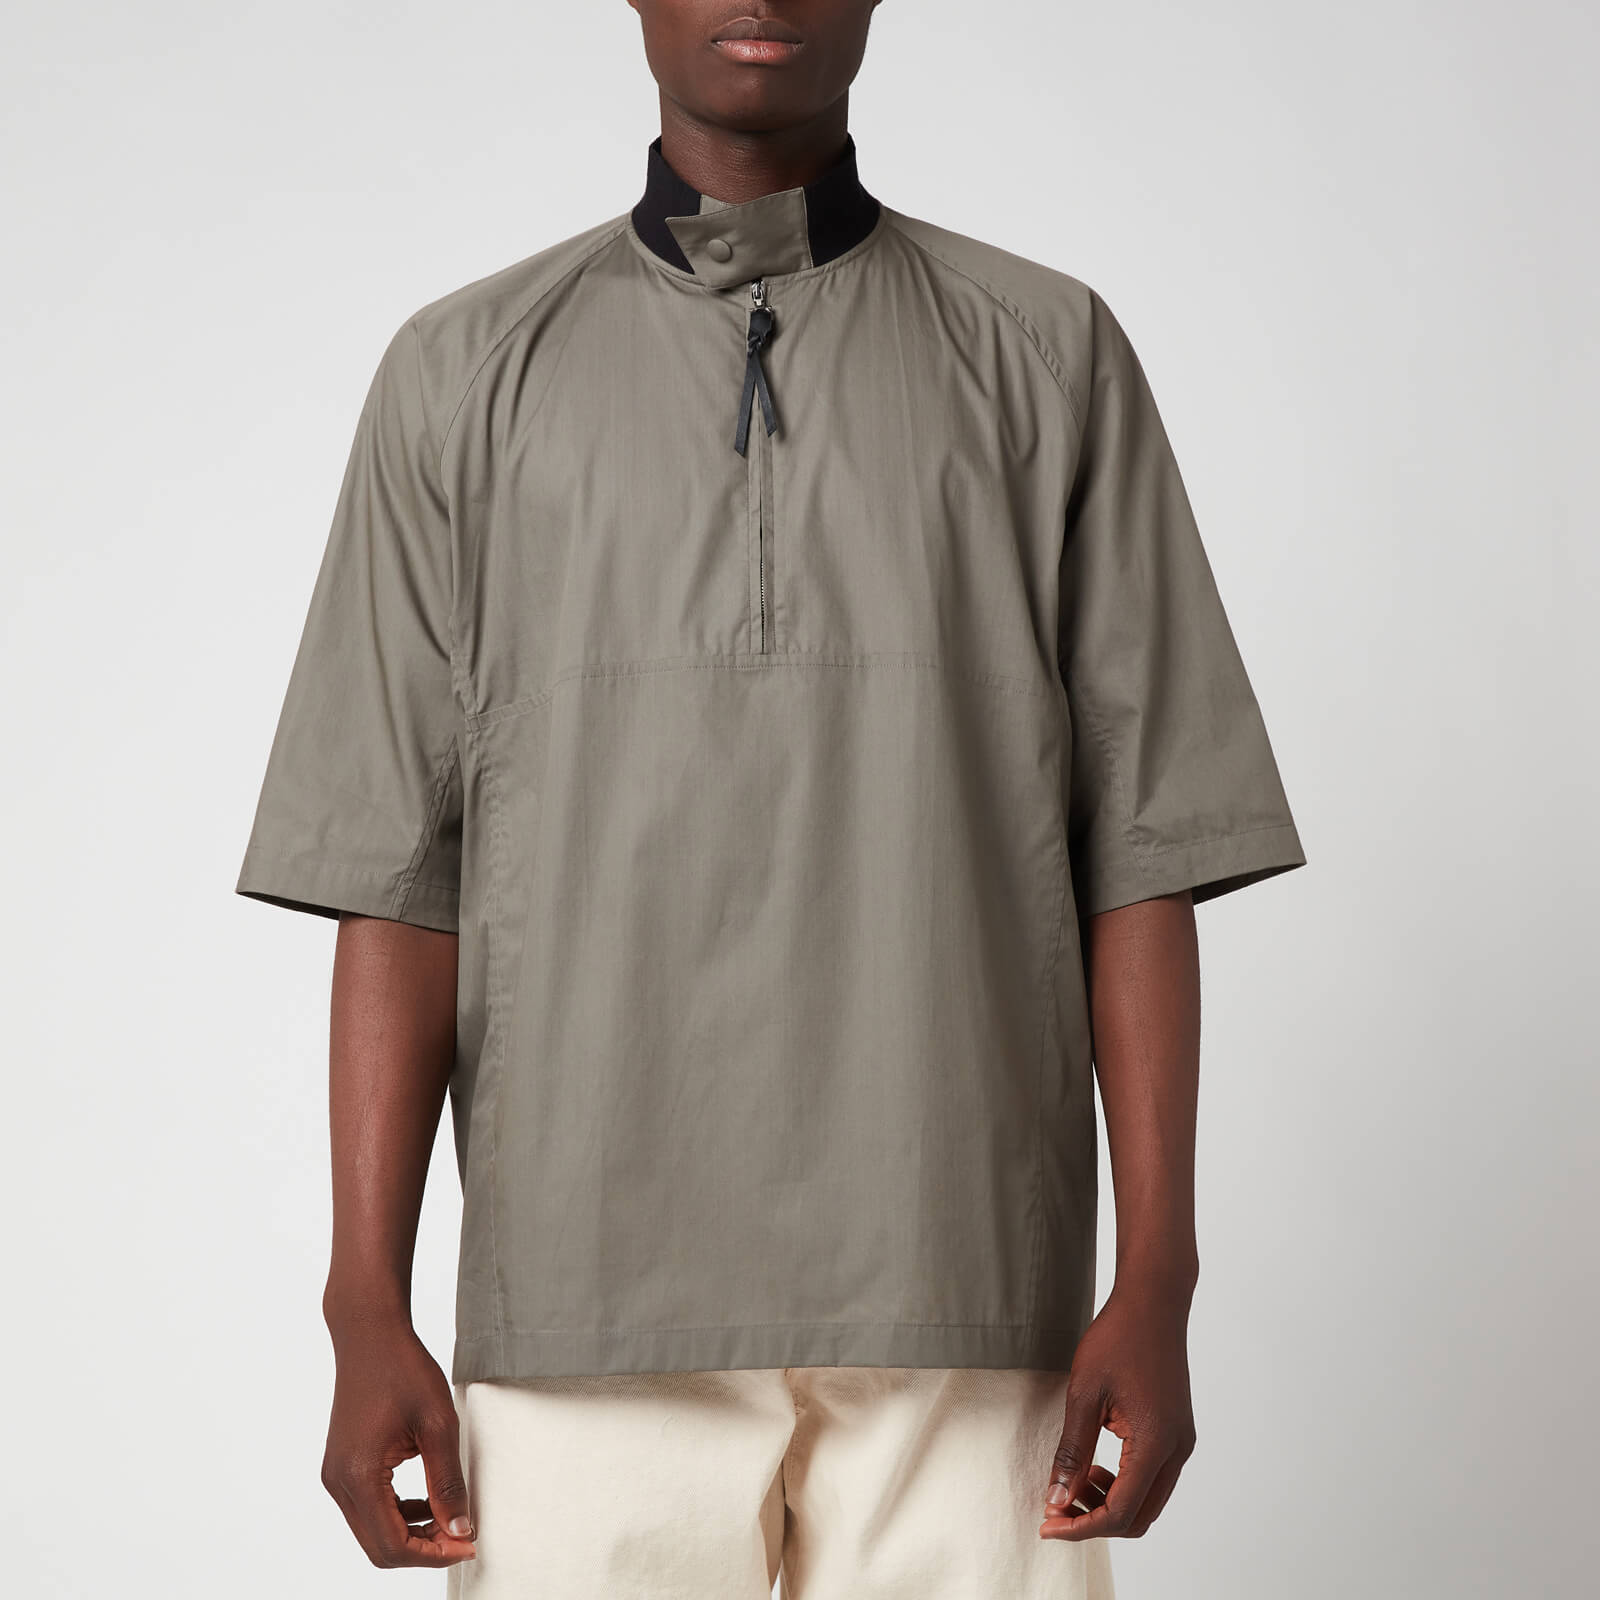 Salvatore Ferragamo Men's Short Sleeve Zip Shirt - Grey/Brown - L